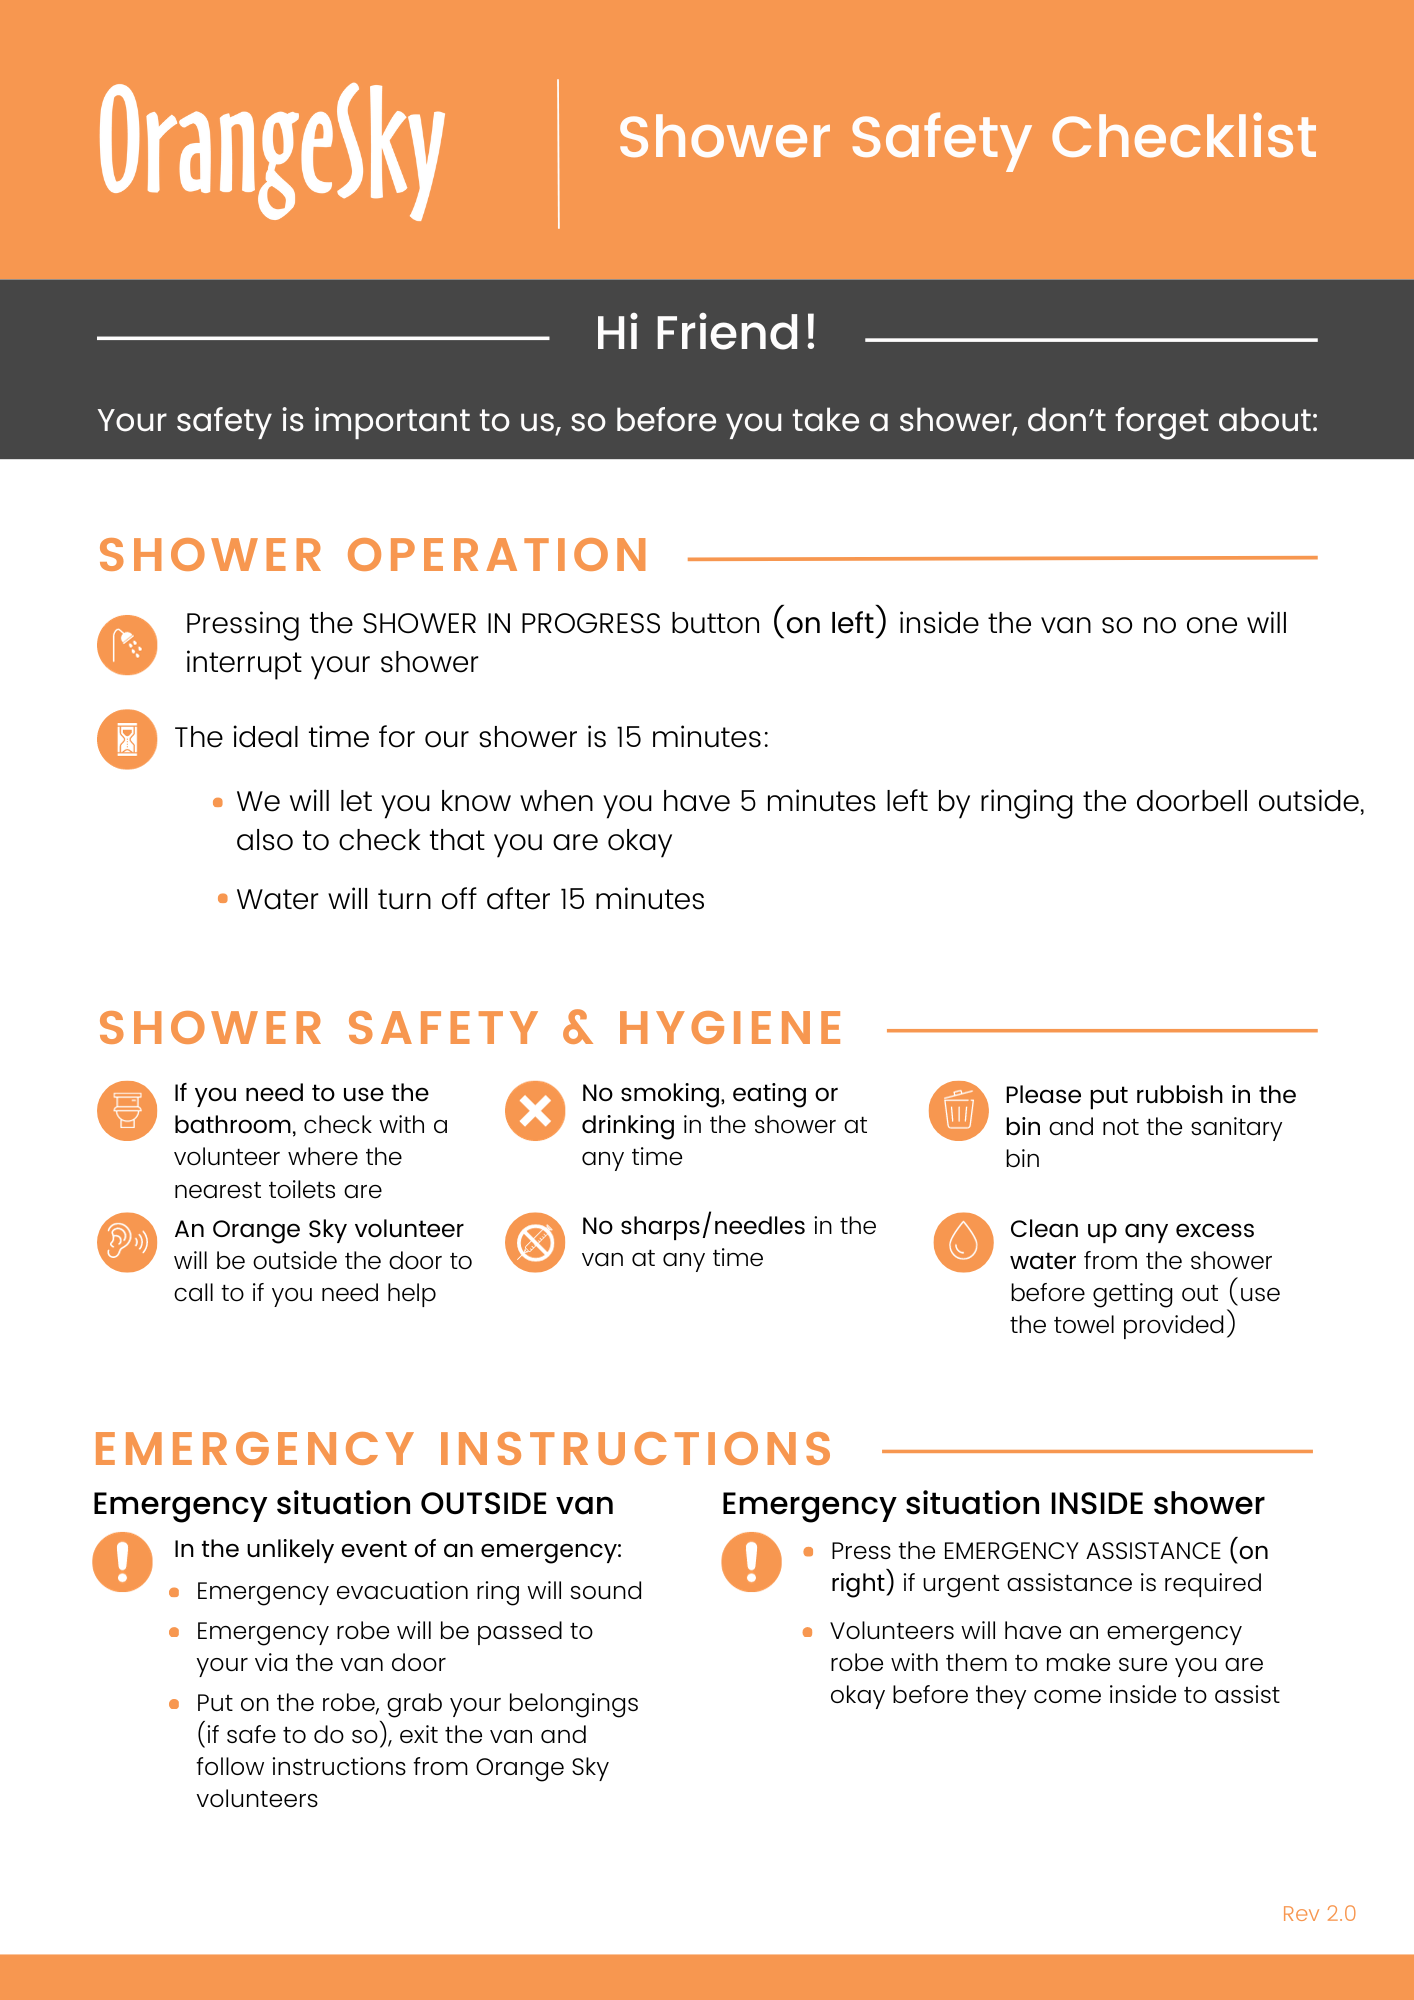 Shower Safety Checklist v2.0.png